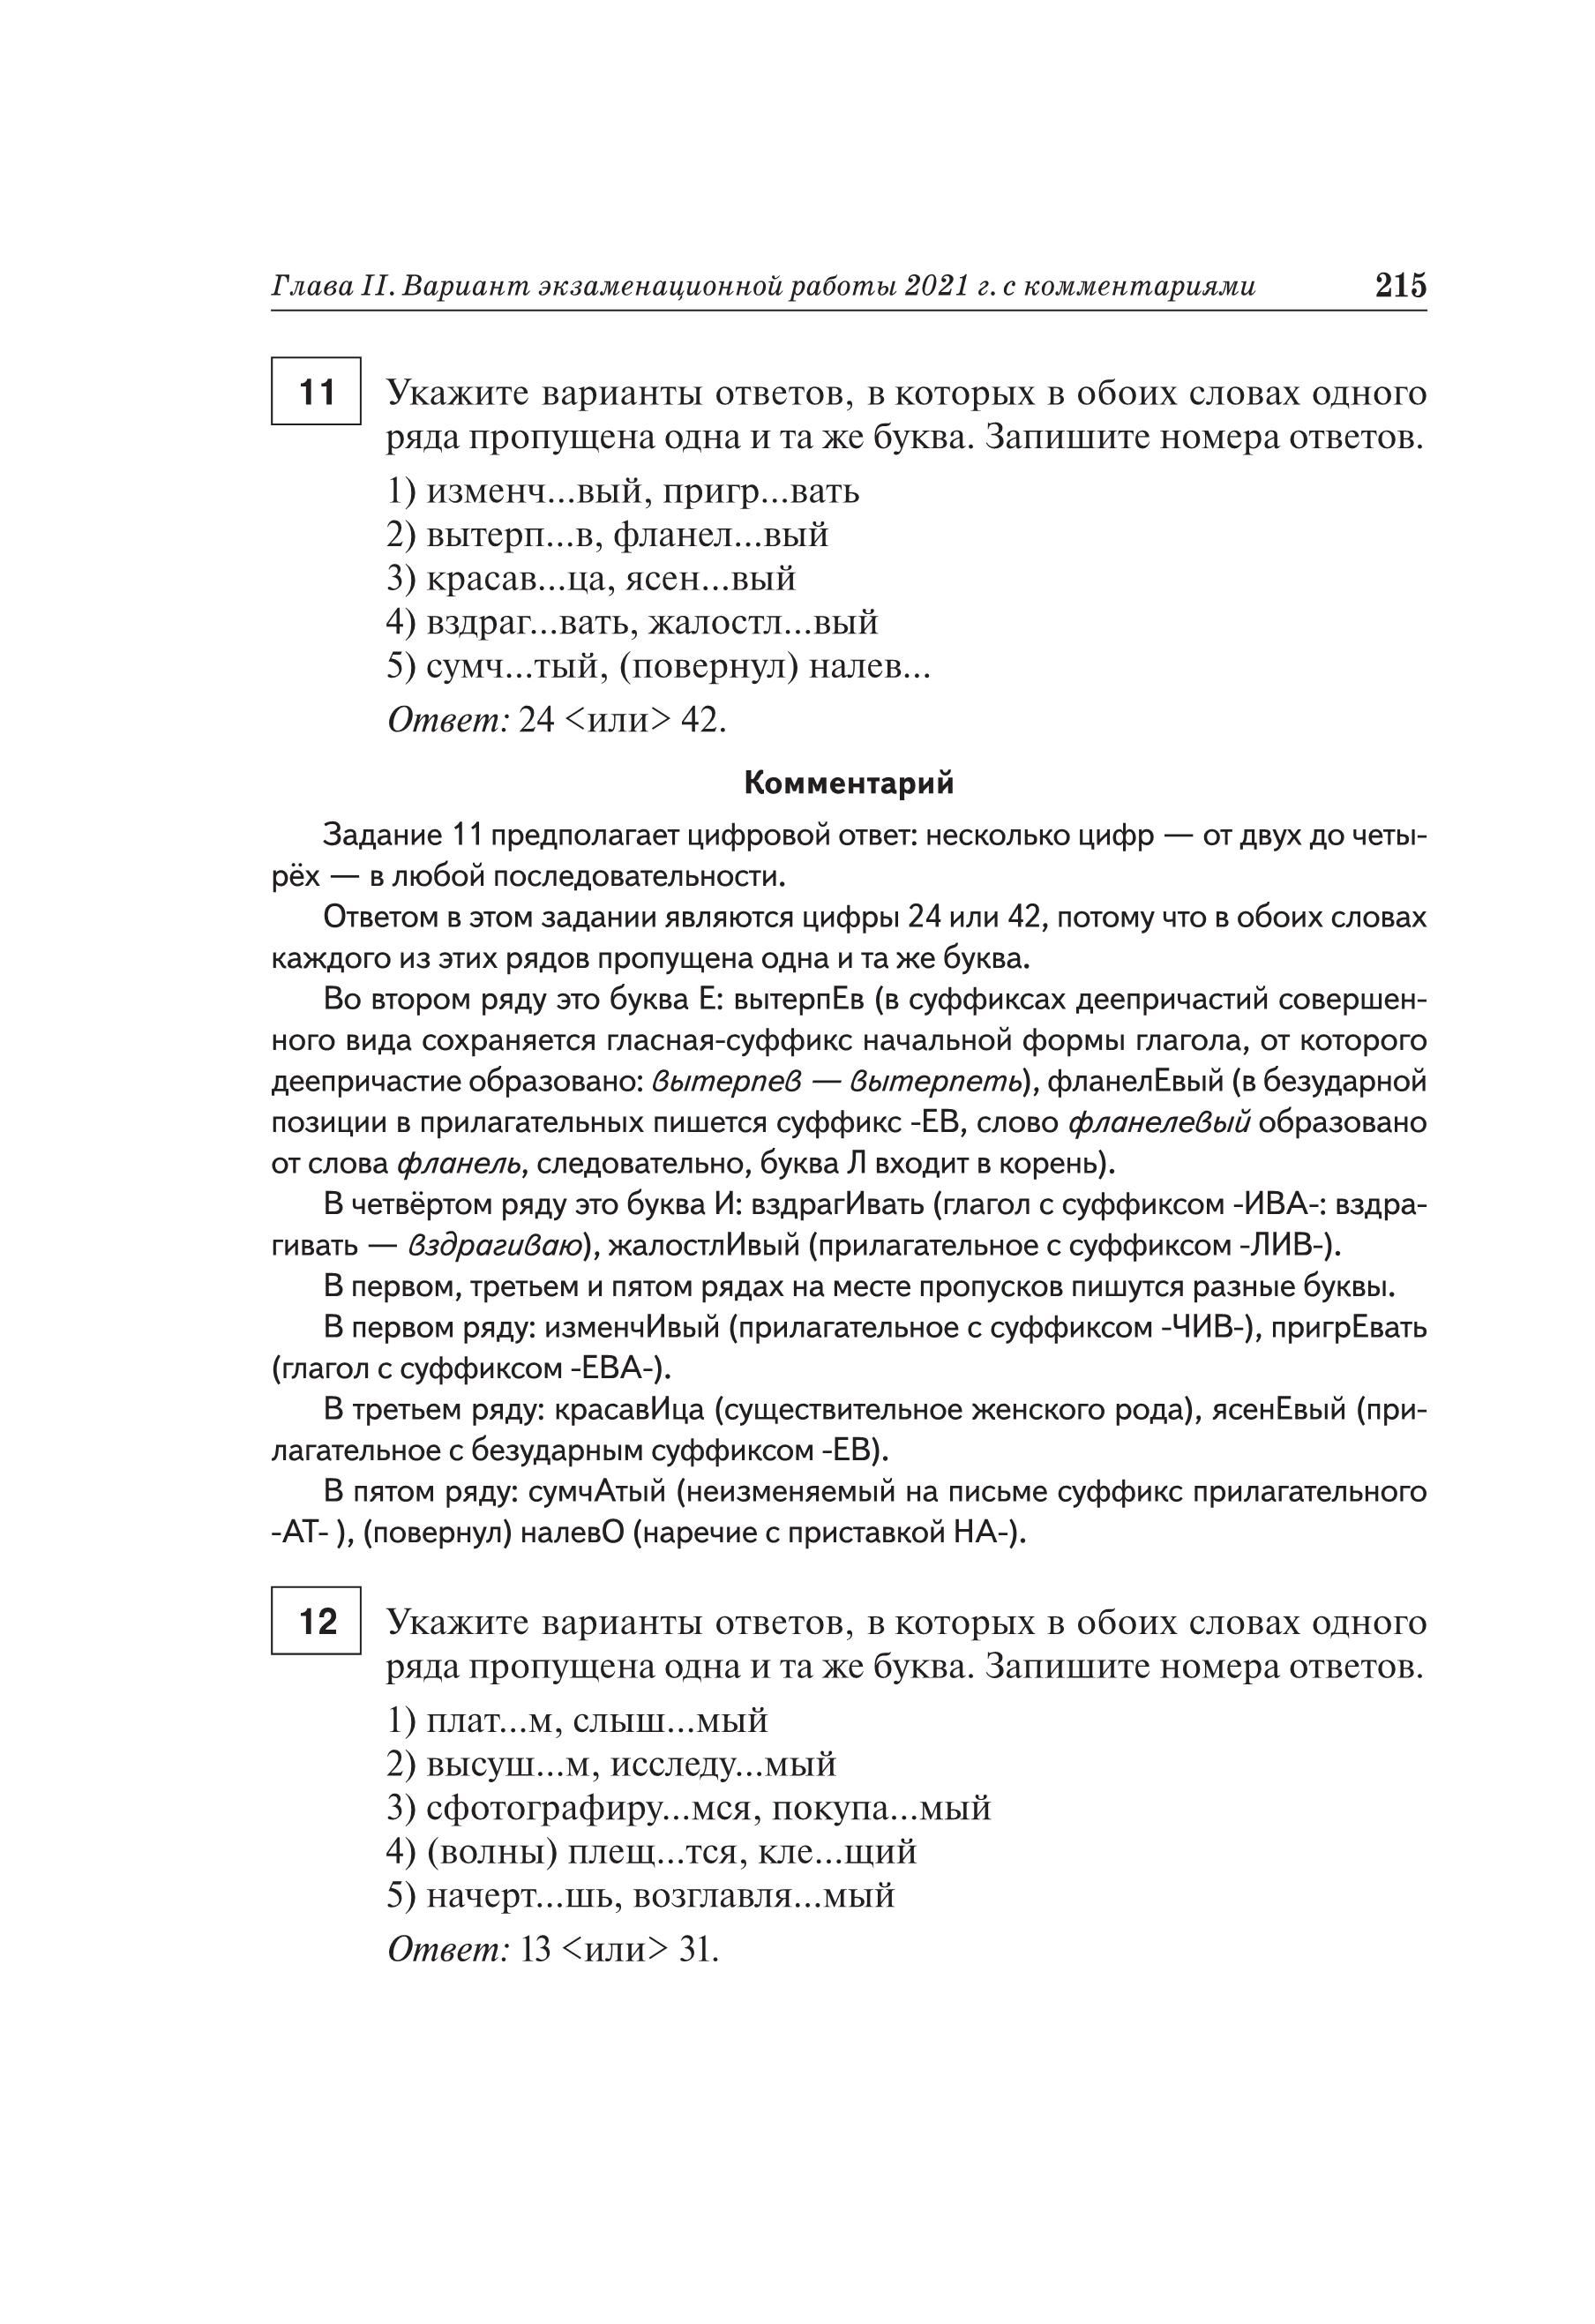 Русский язык. Подготовка к ЕГЭ-2021. 25 тренировочных вариантов по демоверсии 2021 года